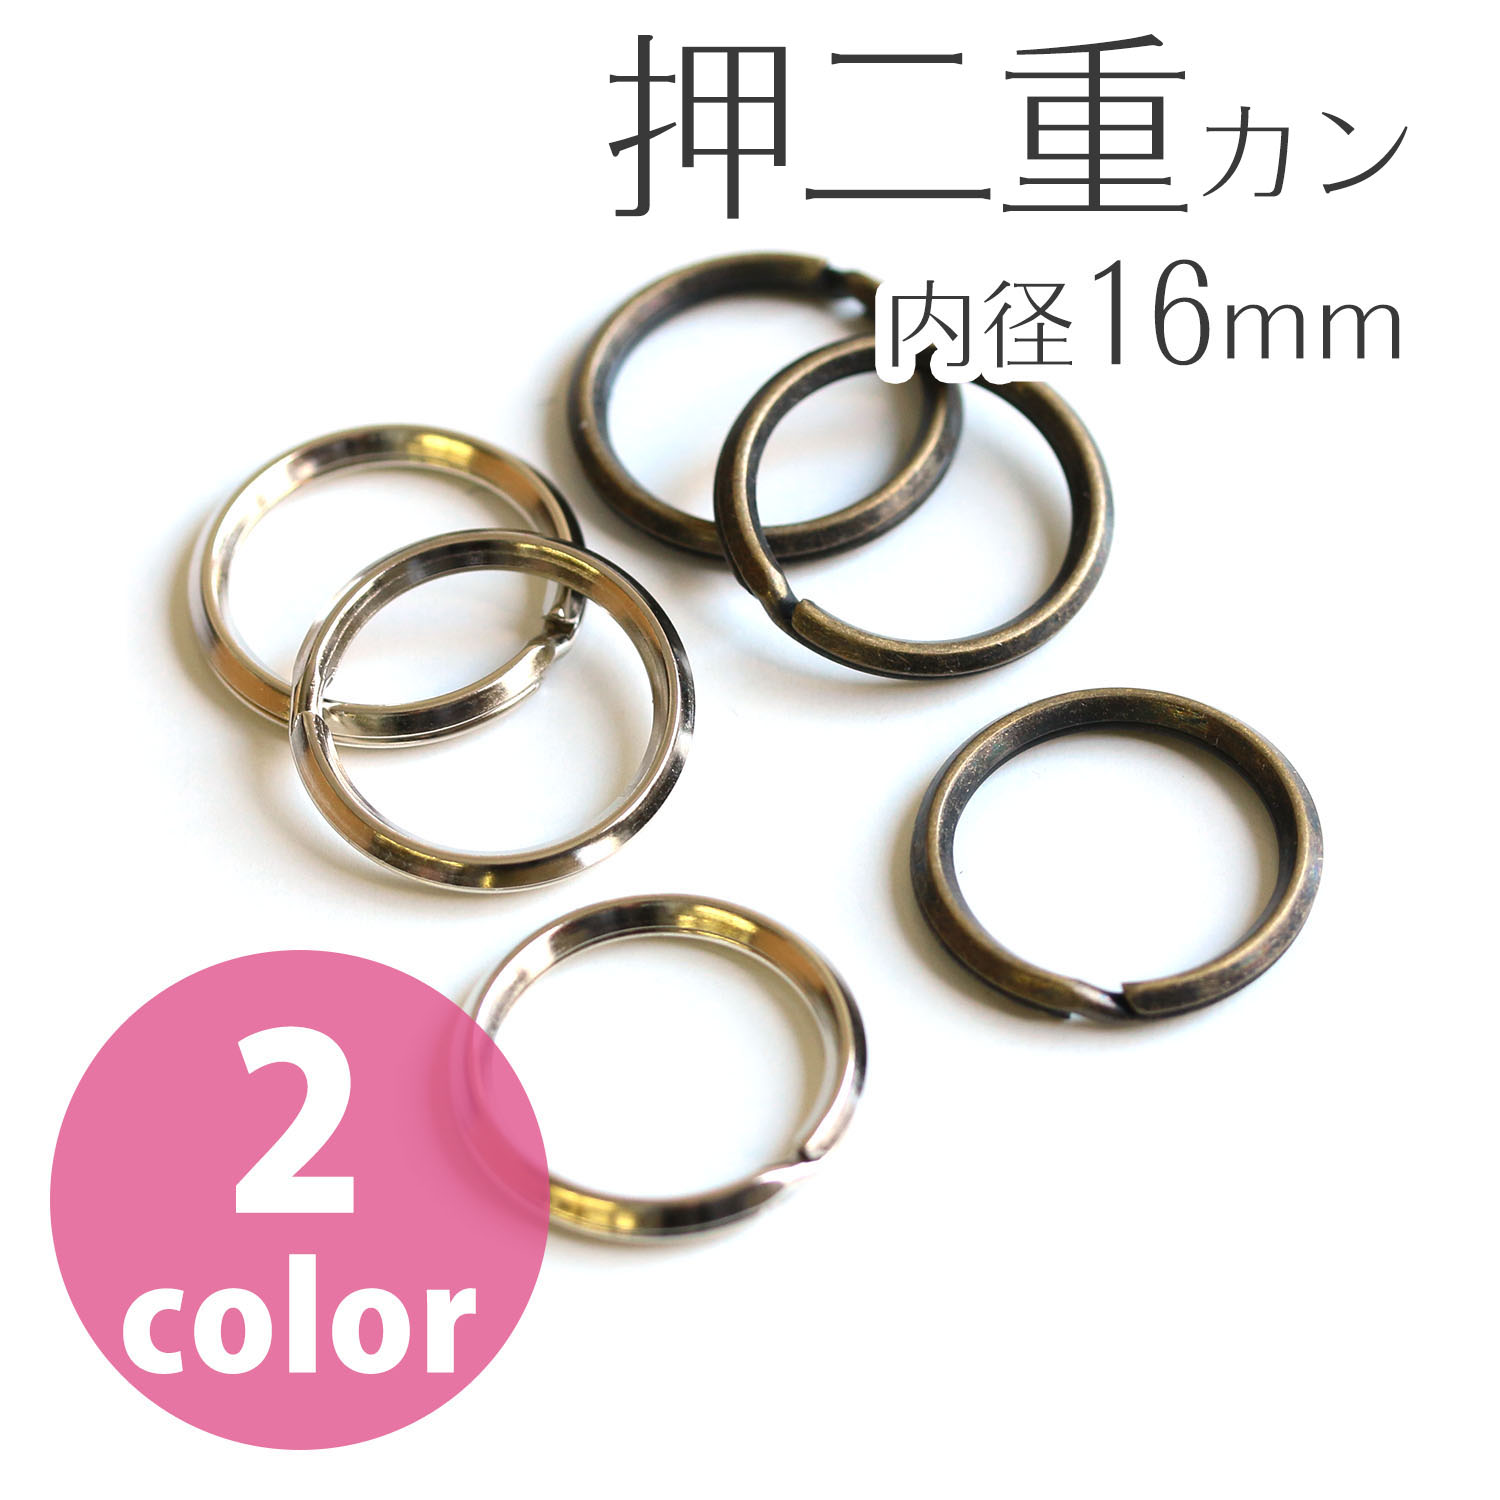 Split Rings outer diameter 20mm, inner diameter 16mm S 30pcs (bag)